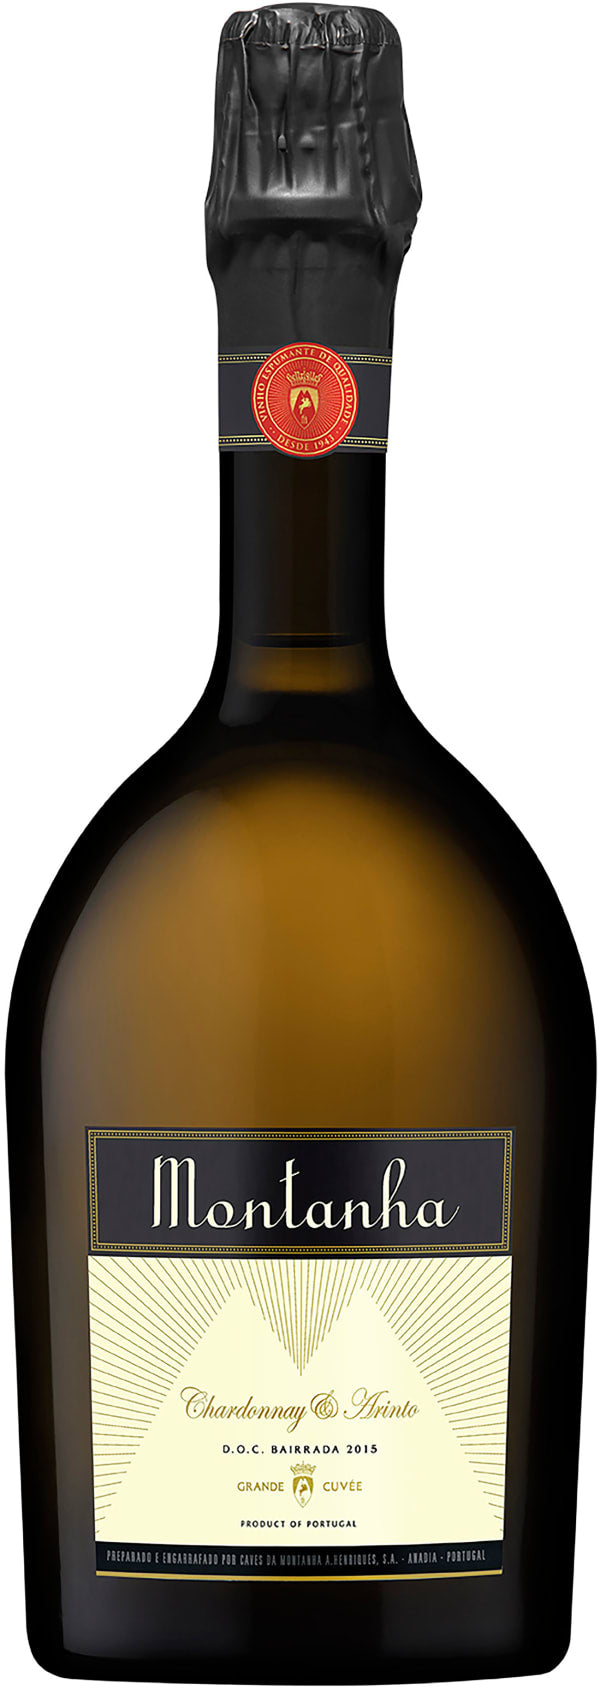 Montanha Chardonnay & Arinto Espumante 2018